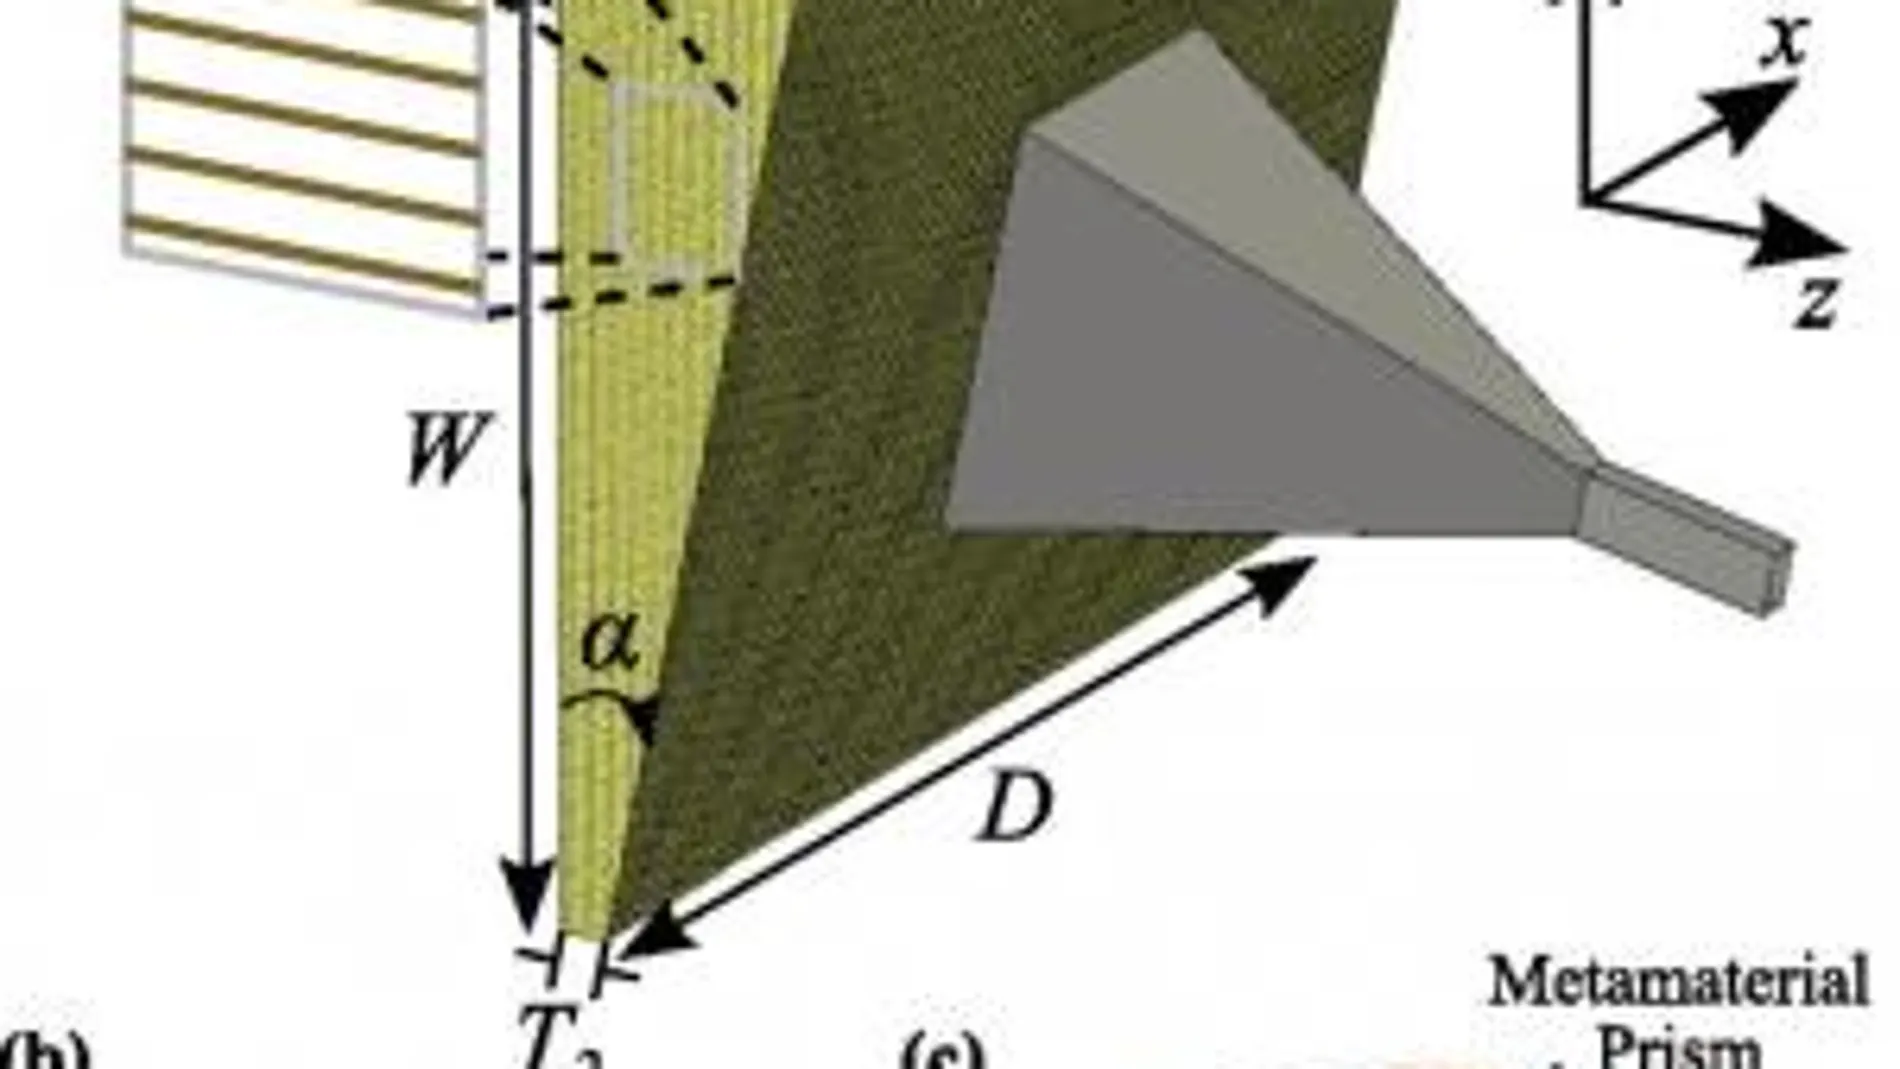 Ilustración del prisma de metamateriales